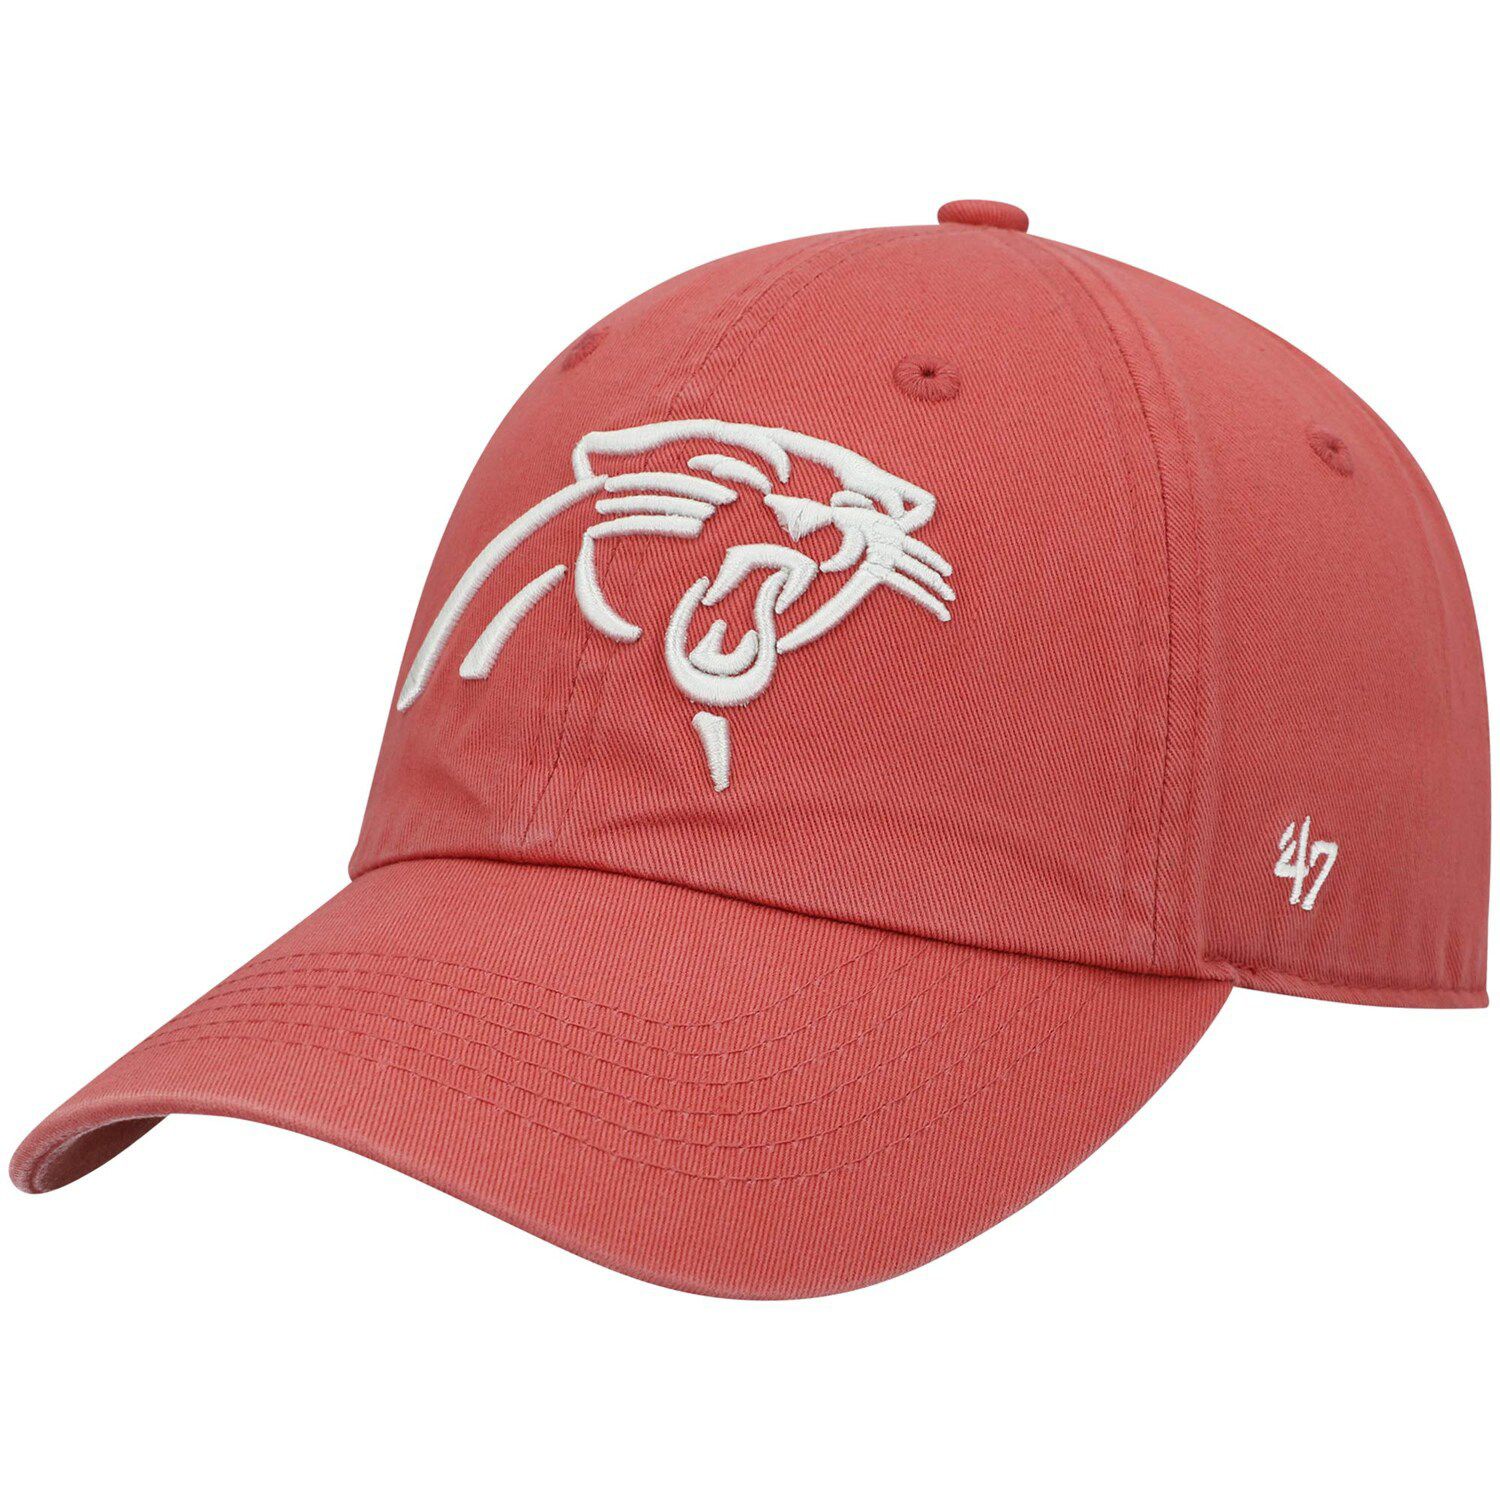 Image for Unbranded Men's '47 Red Carolina Panthers Clean Up Adjustable Hat at Kohl's.